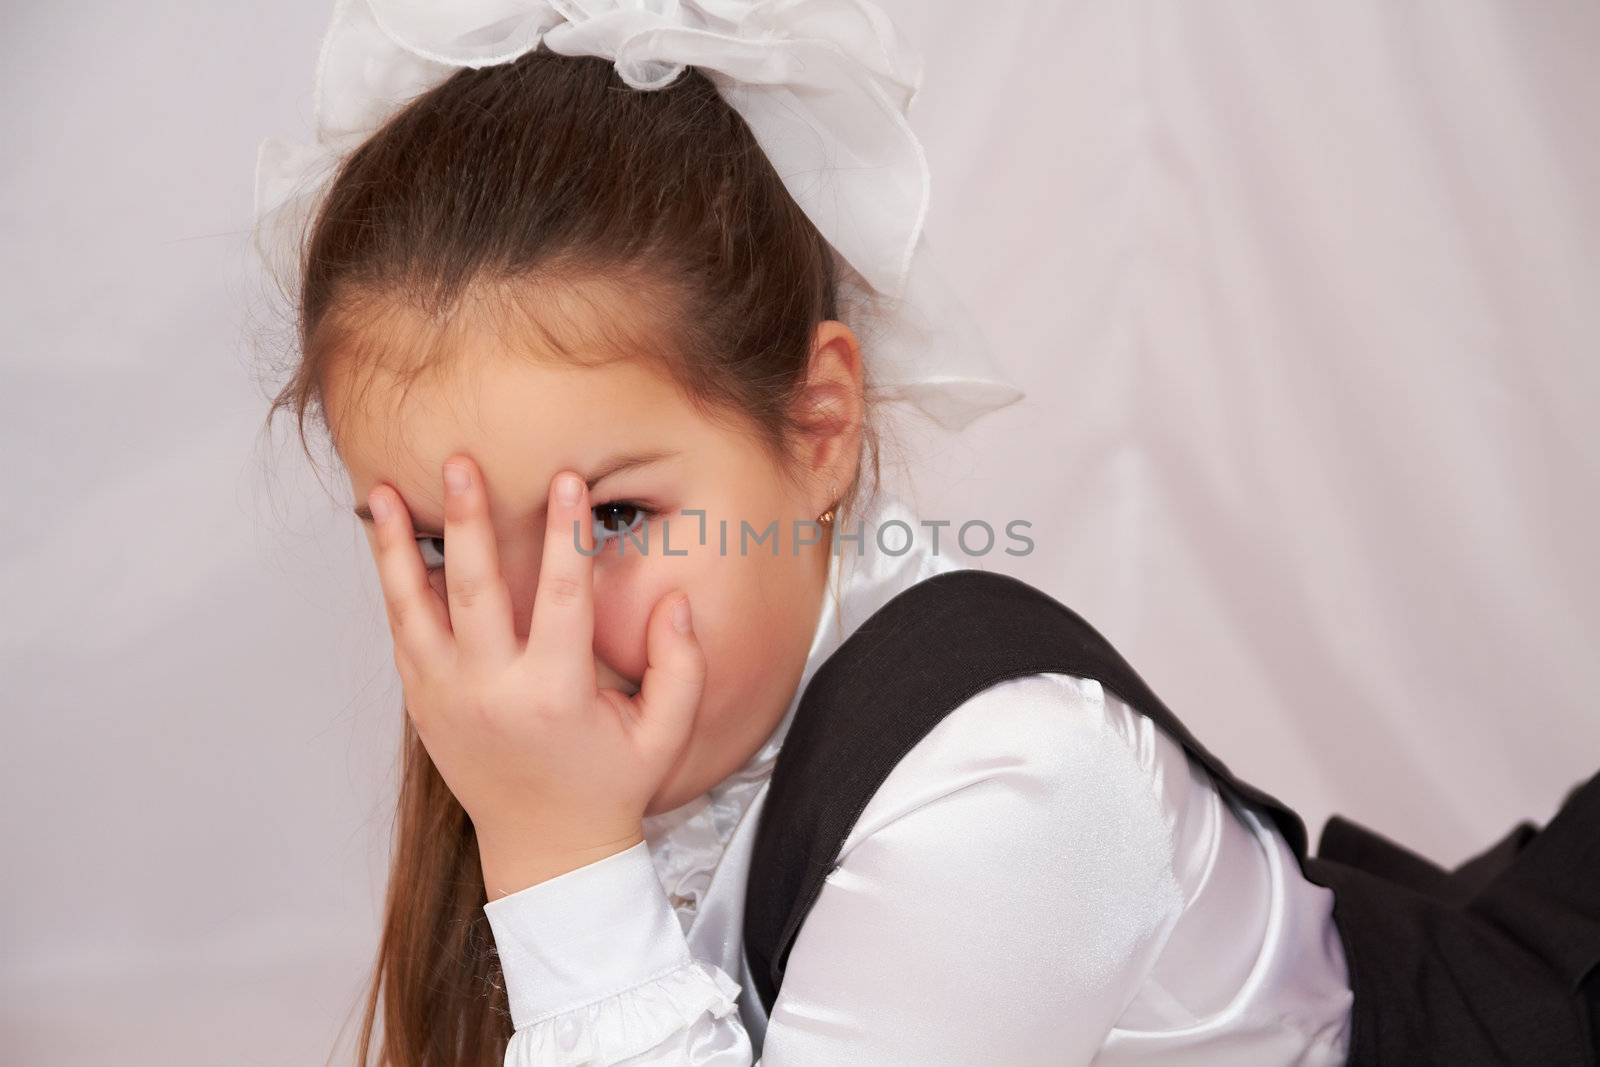 Little girl in school uniform.